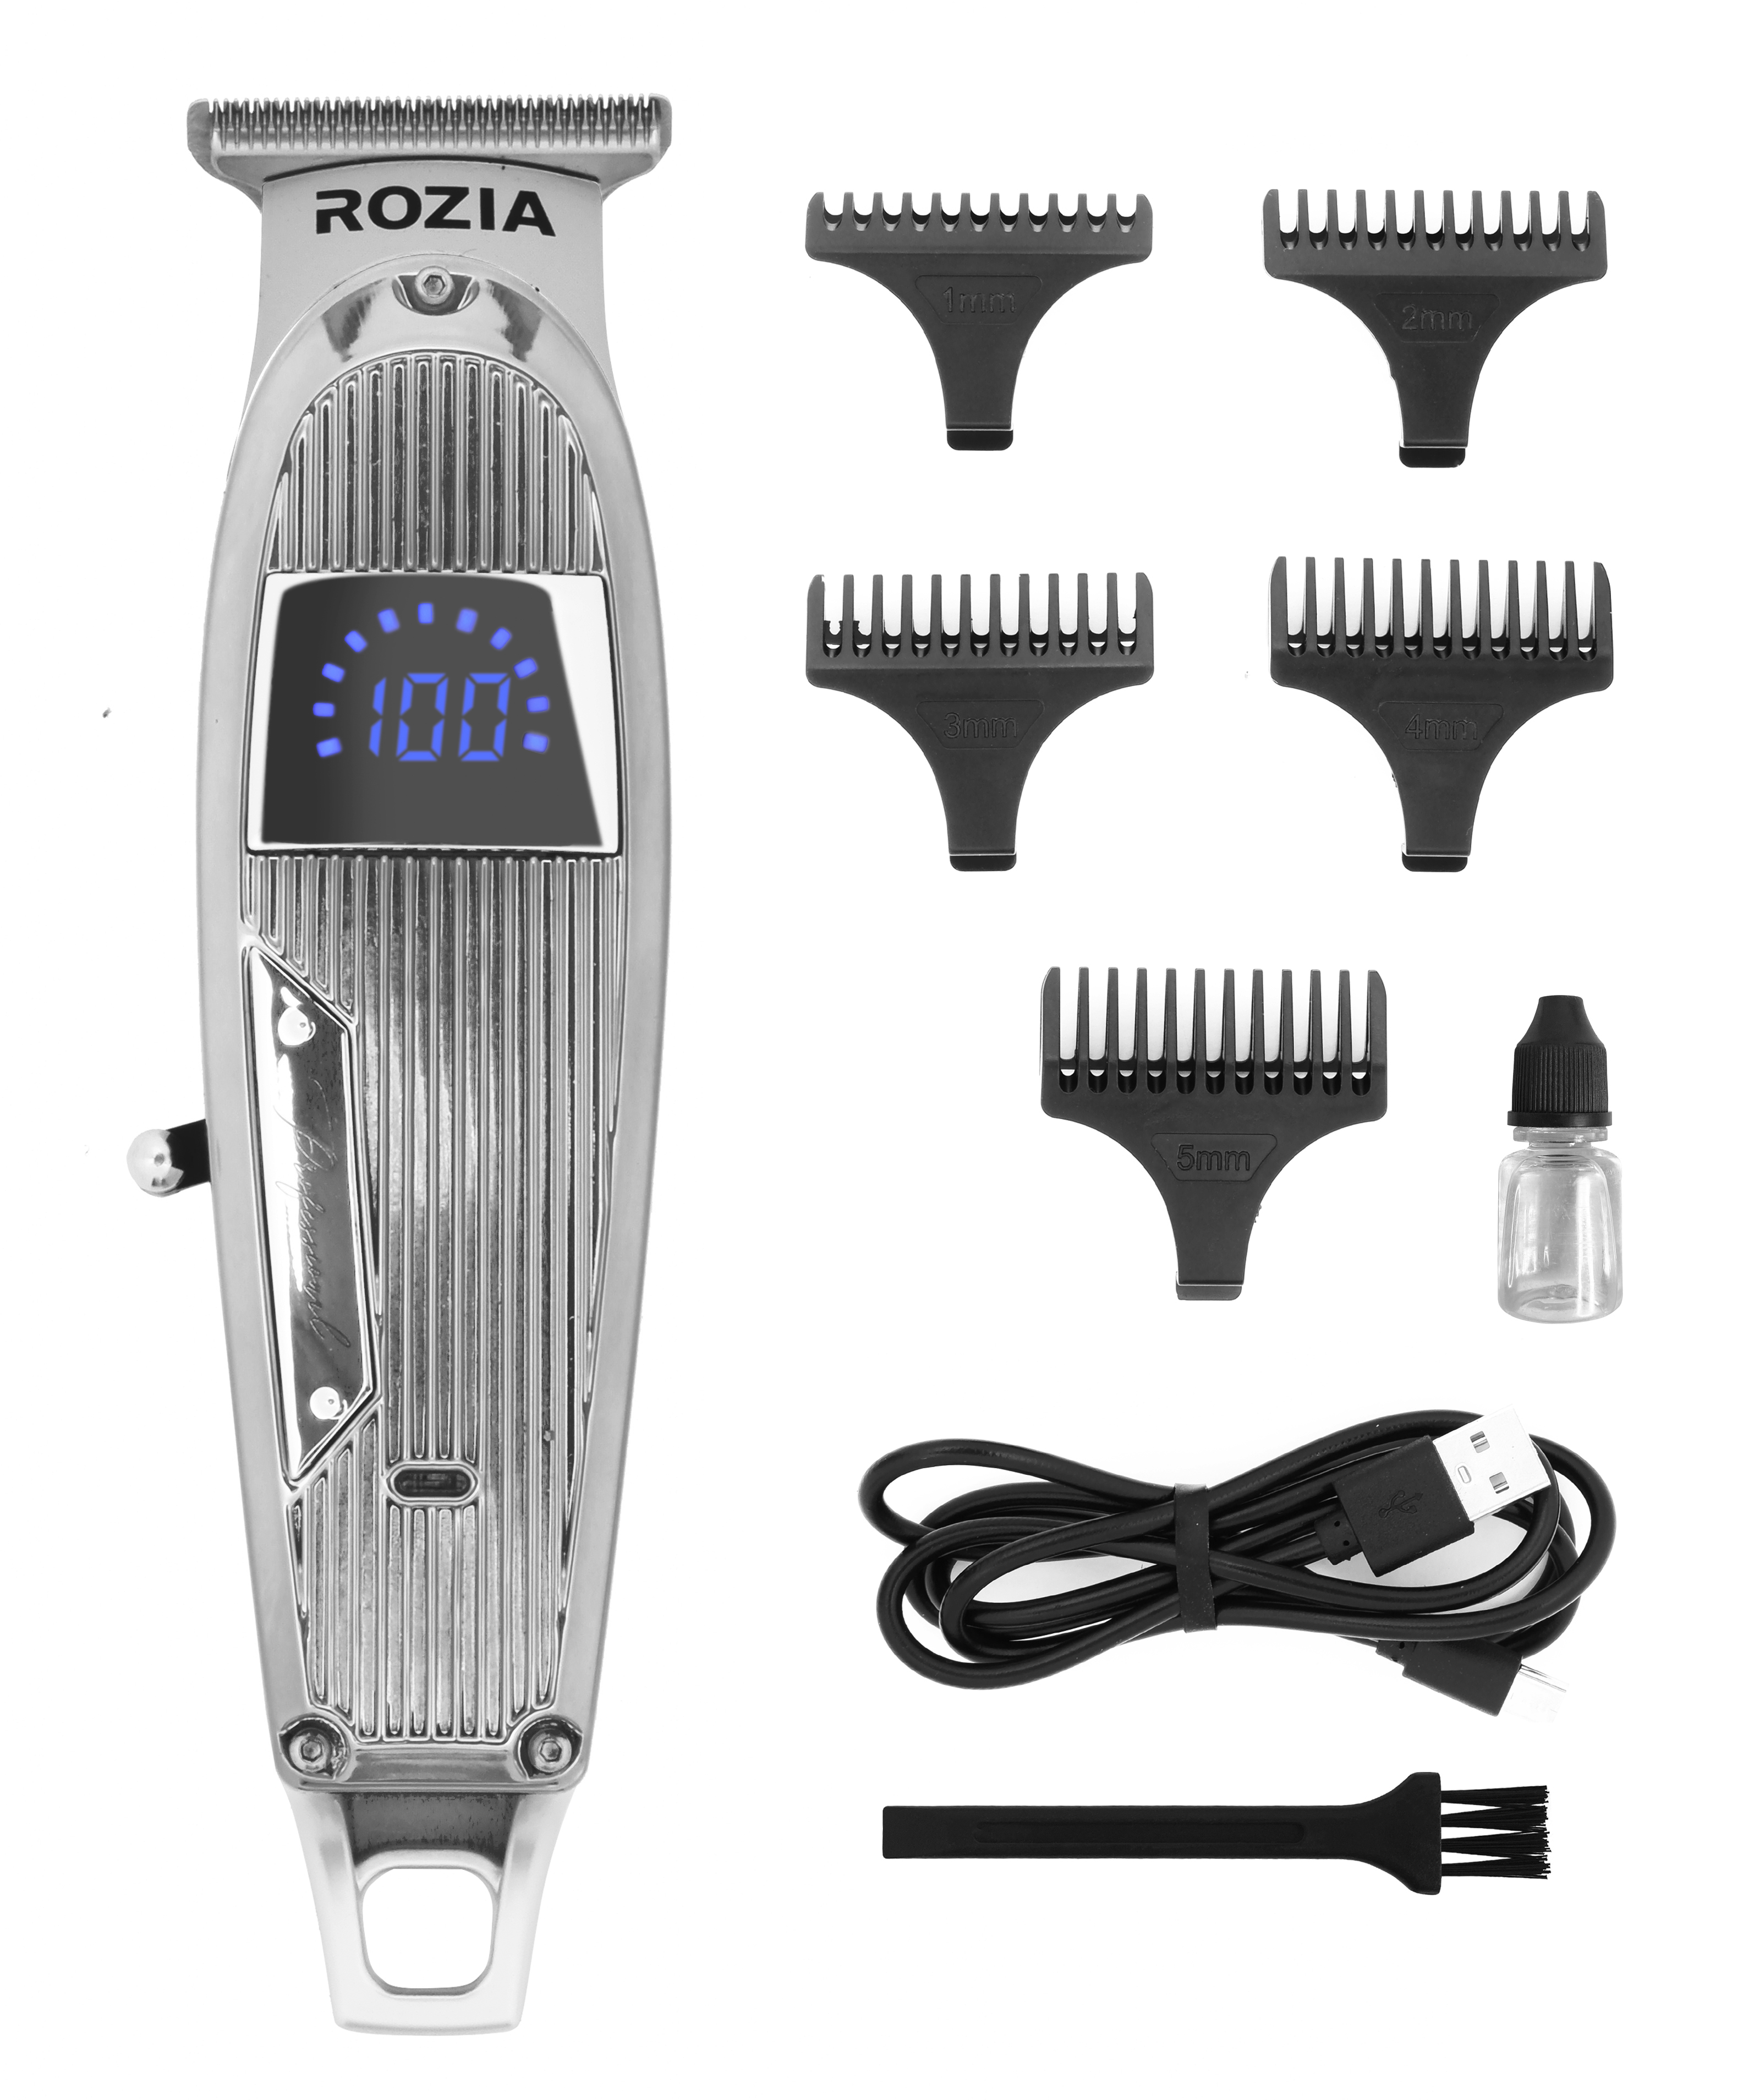 Машинка для стрижки волос Rozia HQ-321 серебристая машинка для стрижки волос gamma x ergo золотистая серебристая